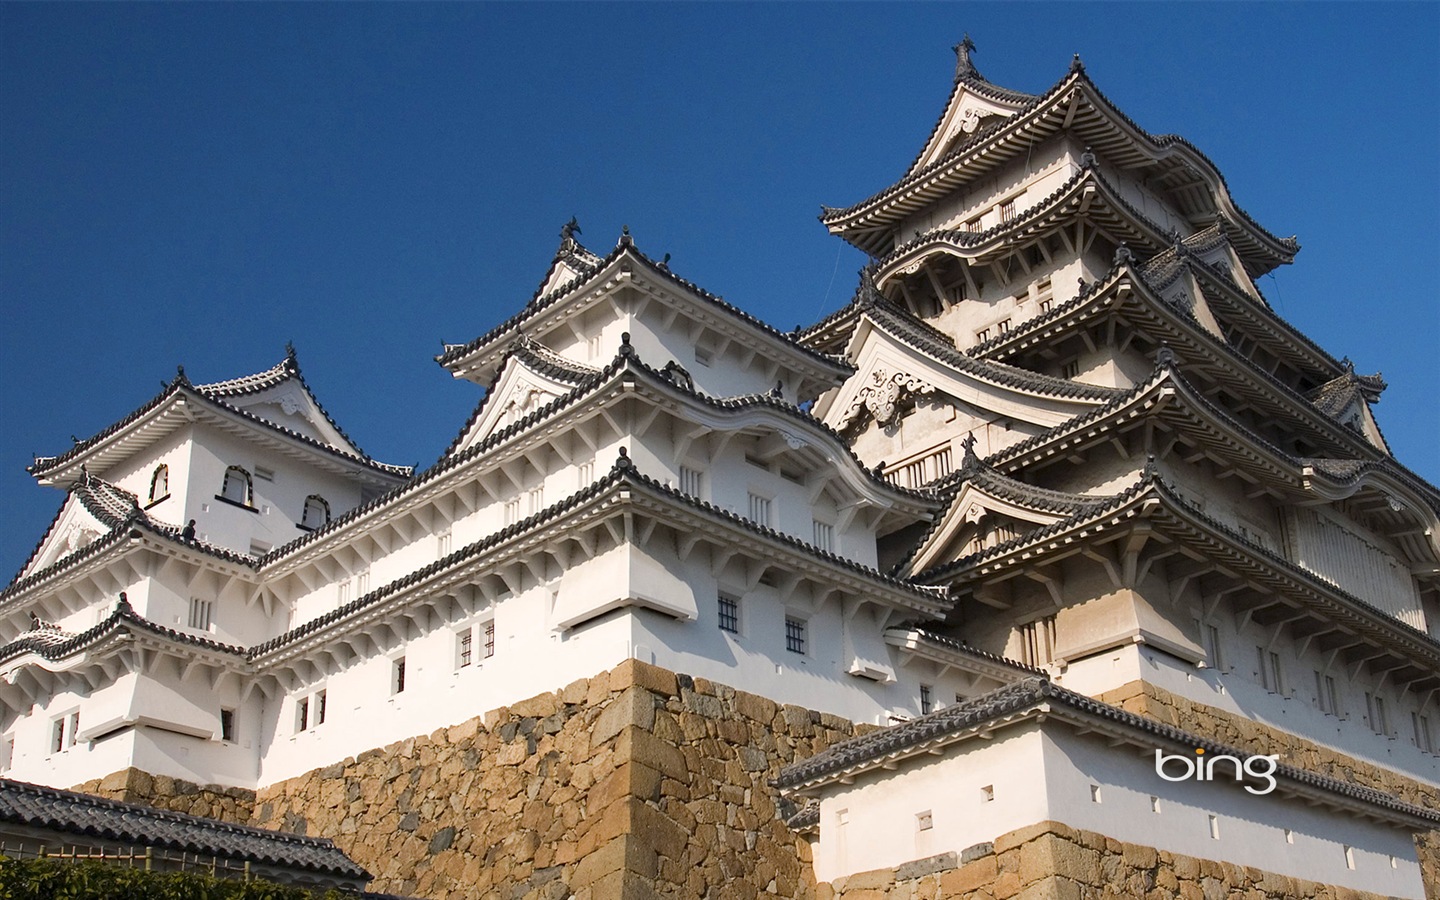 Bing 微软必应高清壁纸：日本风景主题壁纸18 - 1440x900